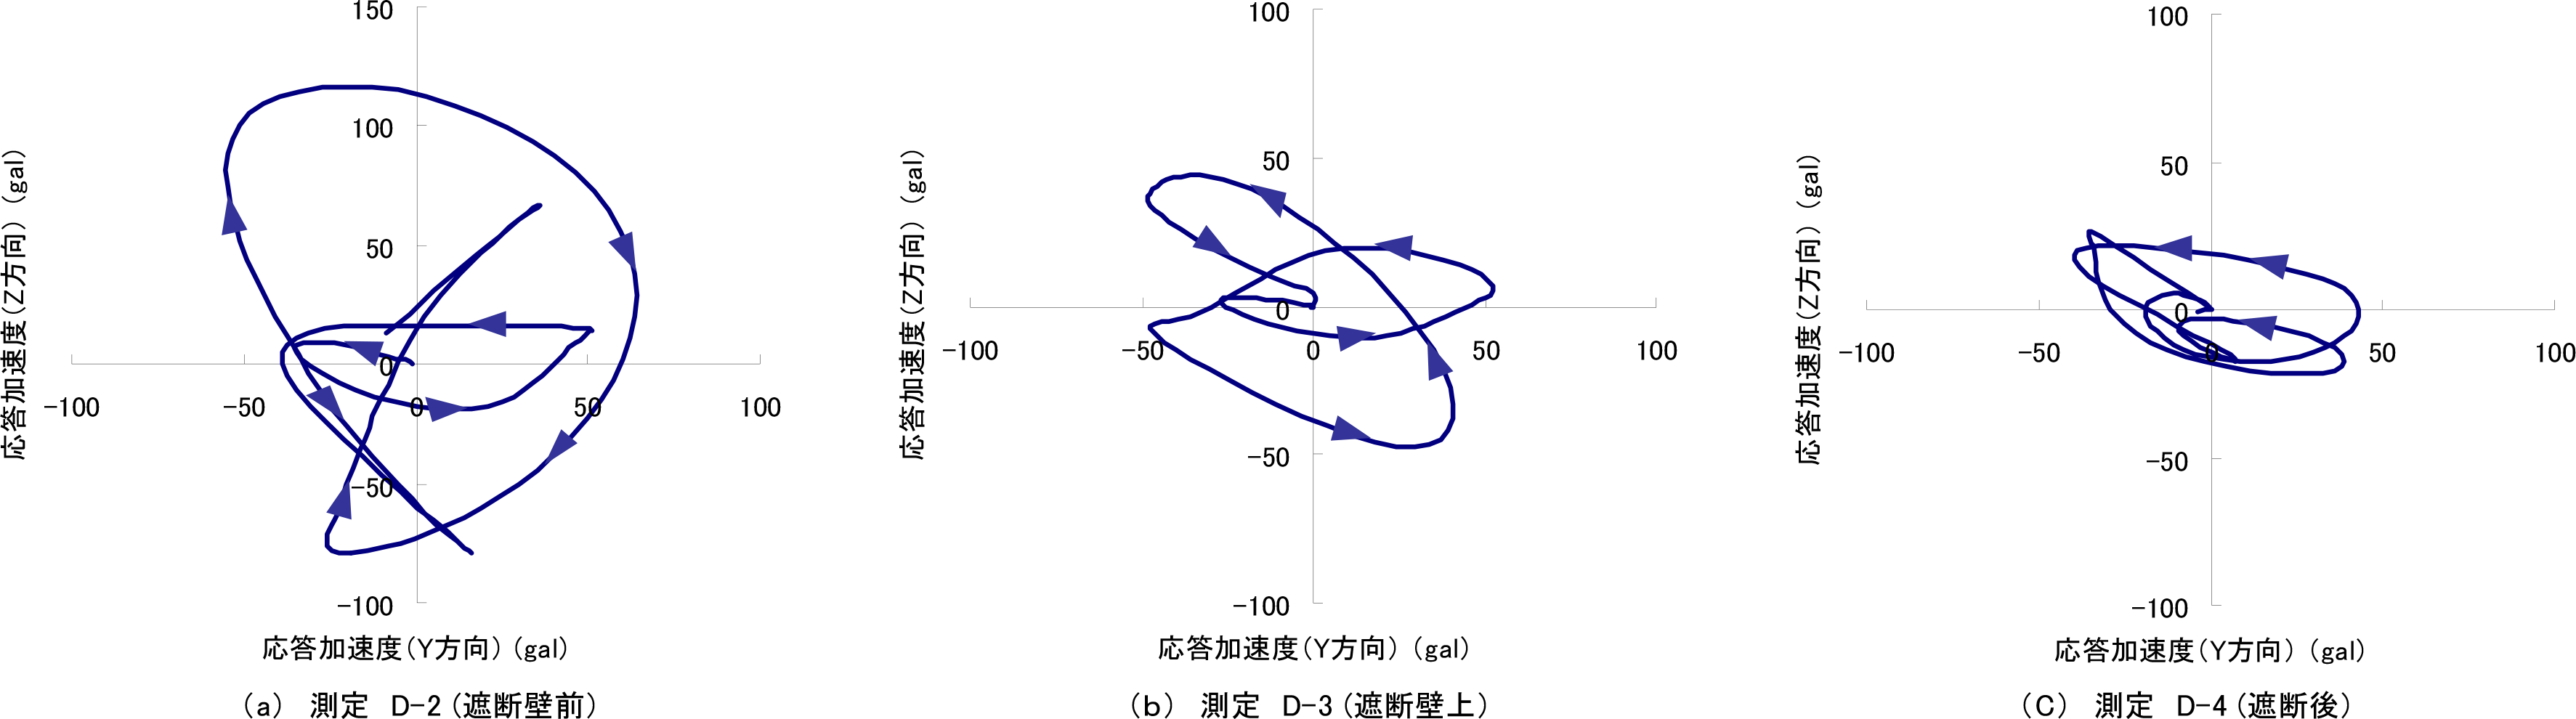 図-8 重錘加振による地盤の振動軌跡